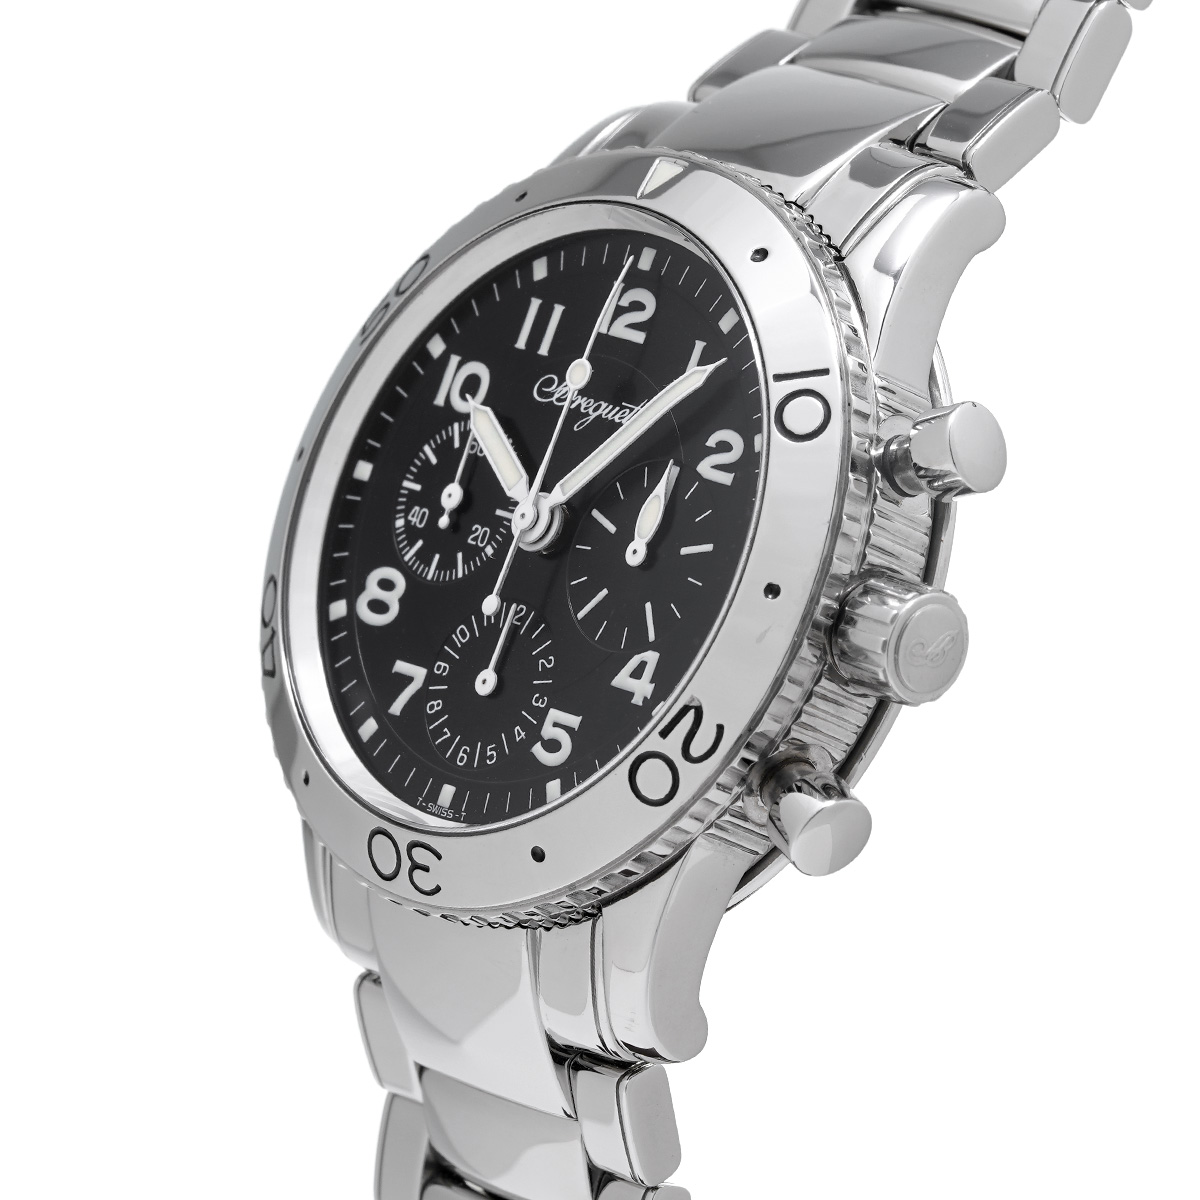 ブレゲ アエロナバル タイプXX 3800ST/92/9W6 ブラック メンズ 時計 【中古】【wristwatch】